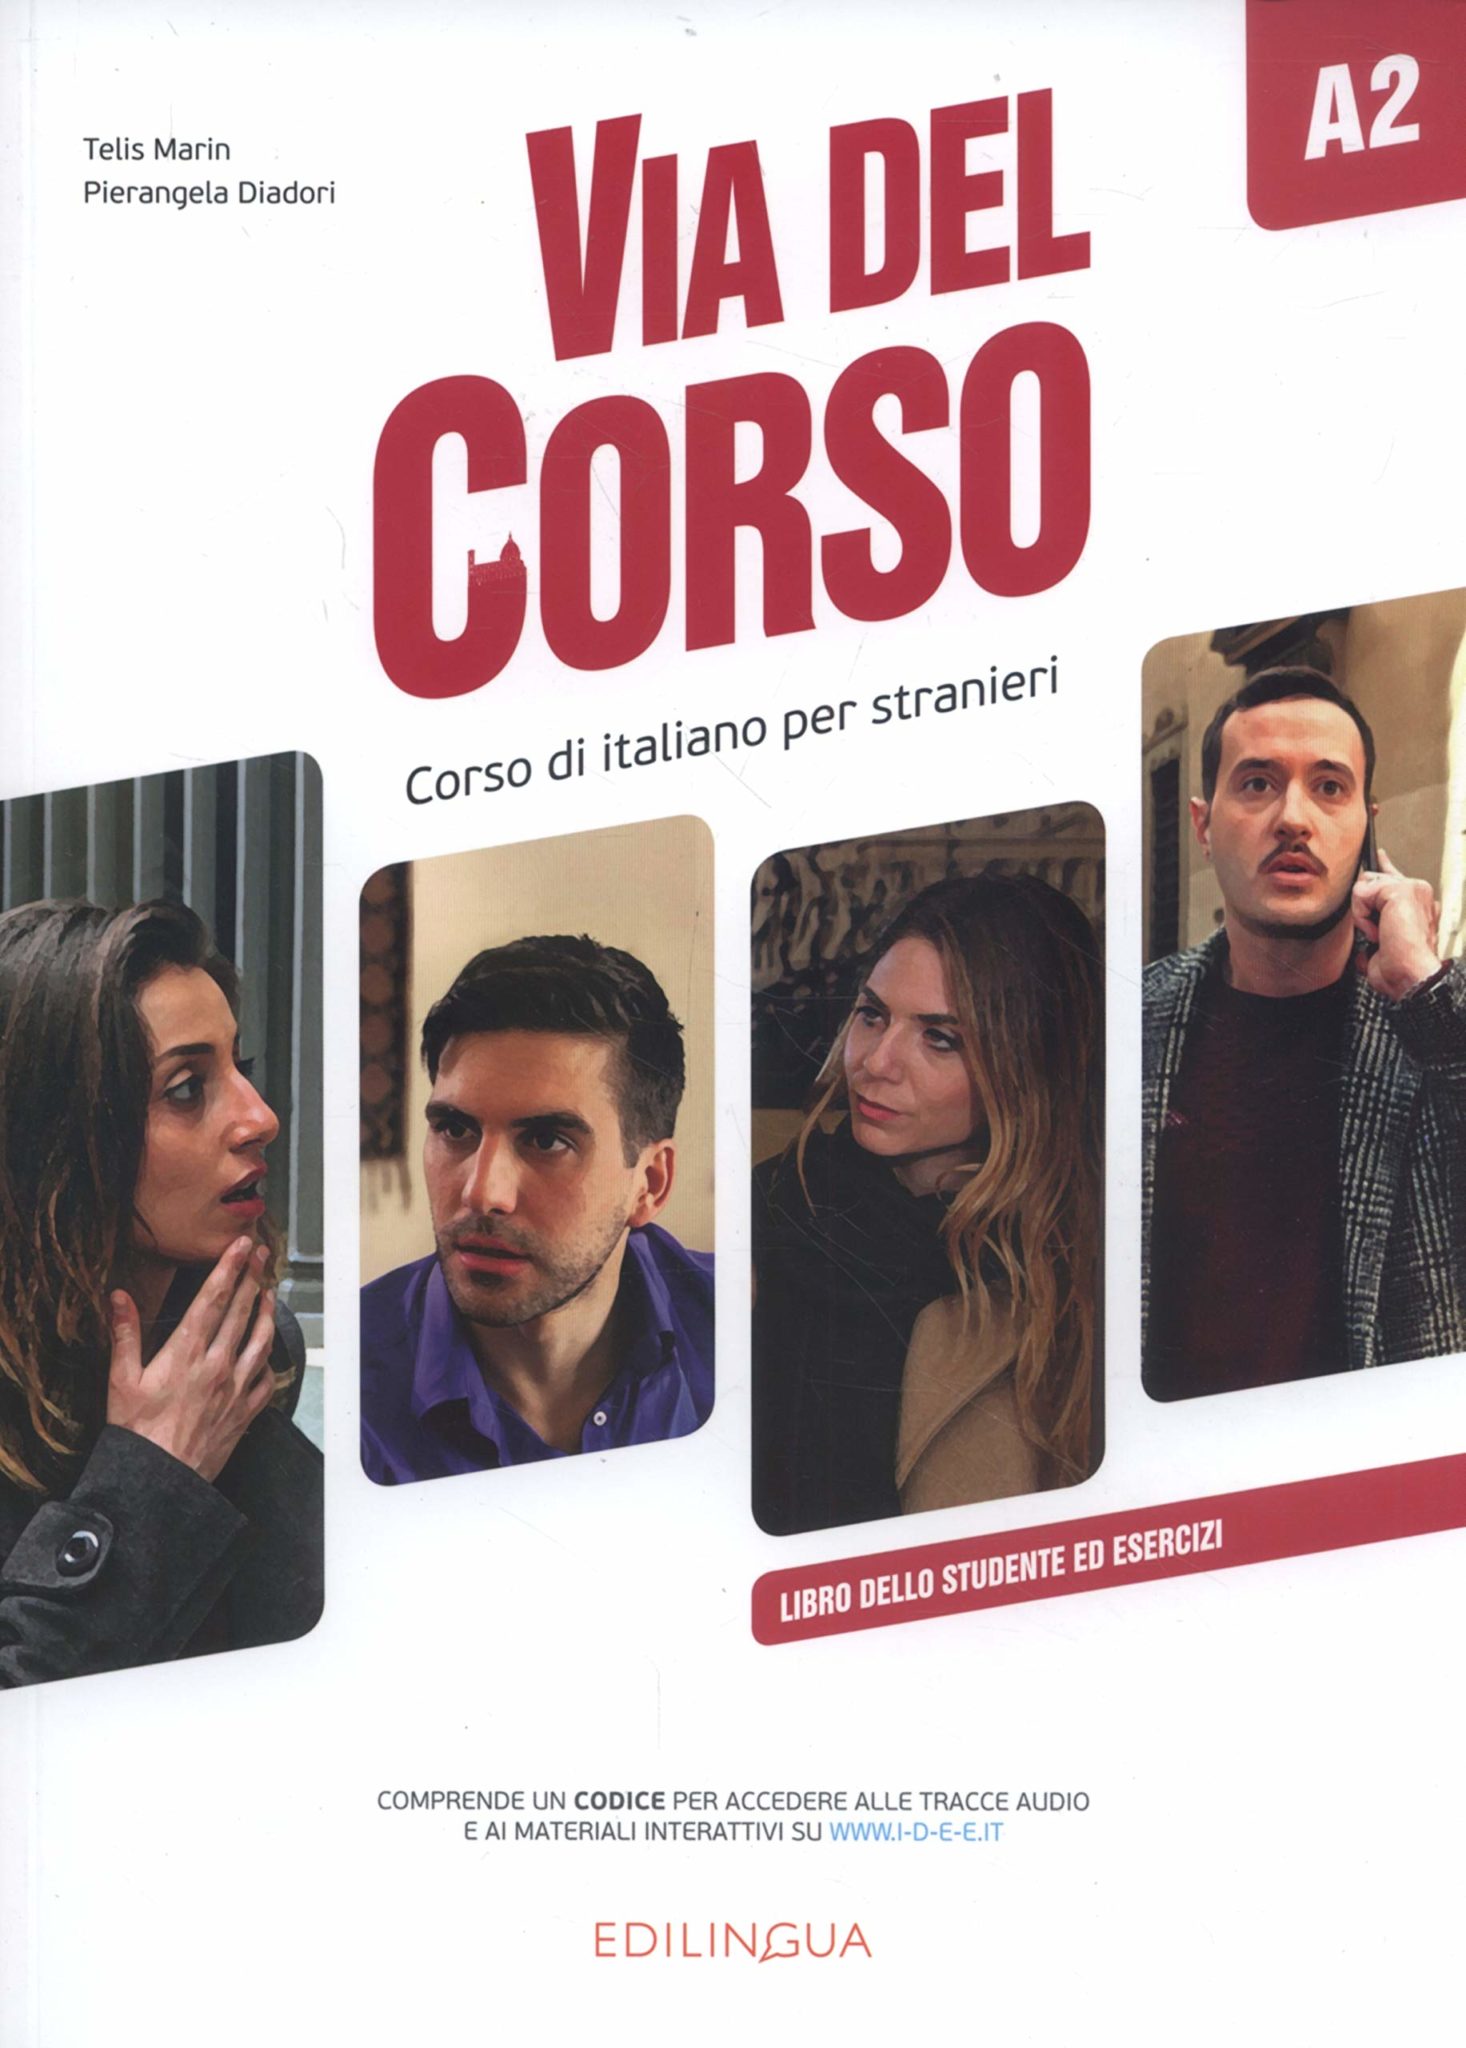 VIA DEL CORSO A2 : libro dello studente ed esercizi autora Tellis Marin, Pierangela Diadori